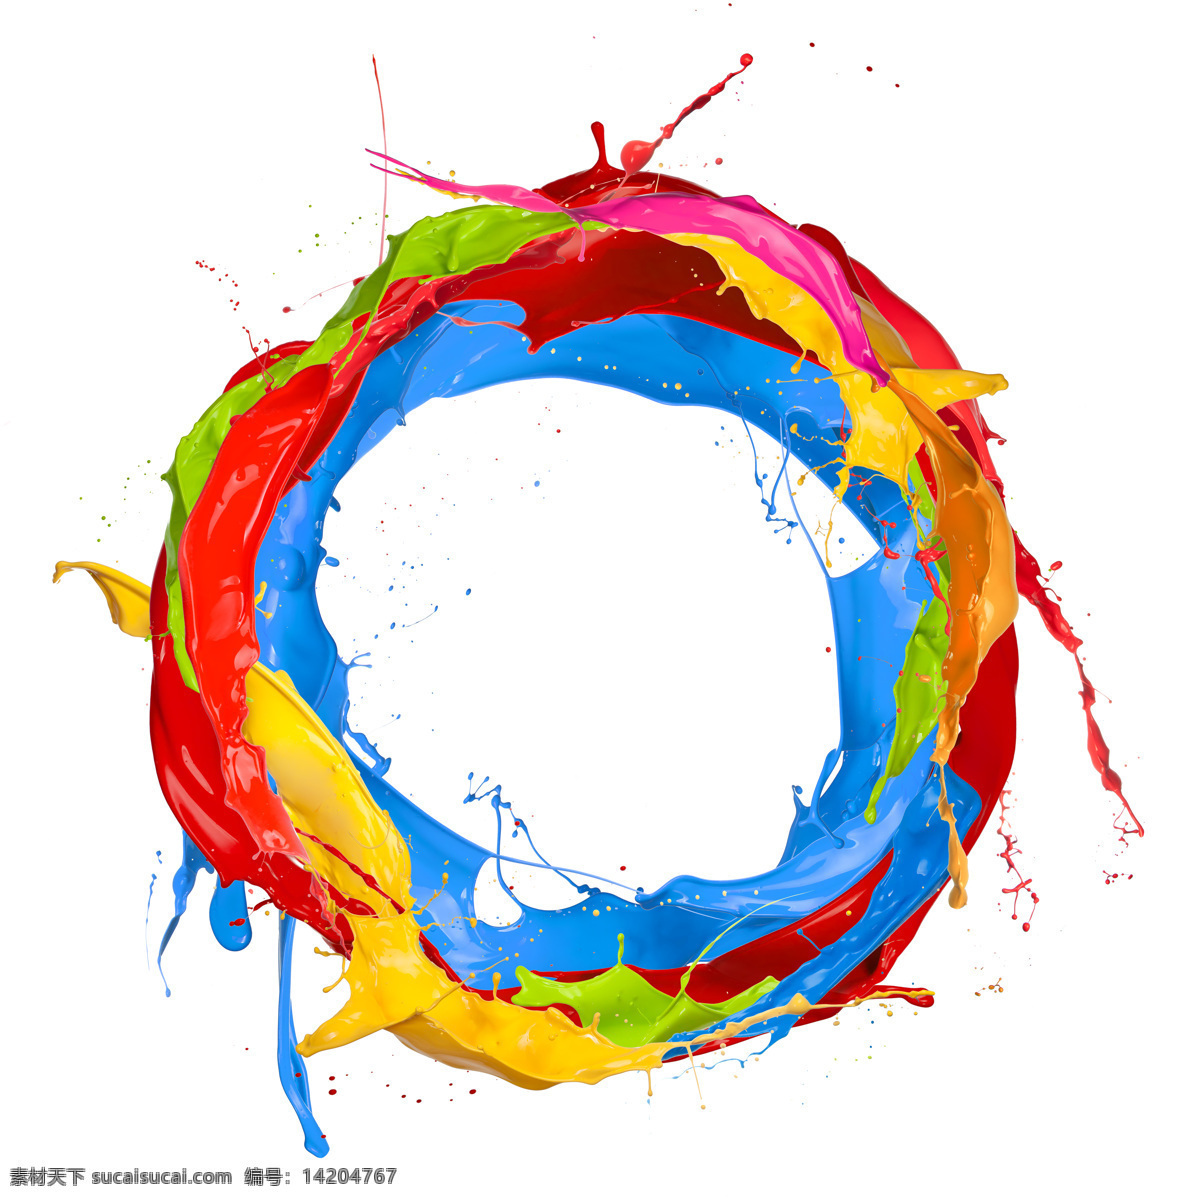 彩色油漆圆圈 圆圈 背景 彩色 涂料 颜料 其他类别 生活百科 白色